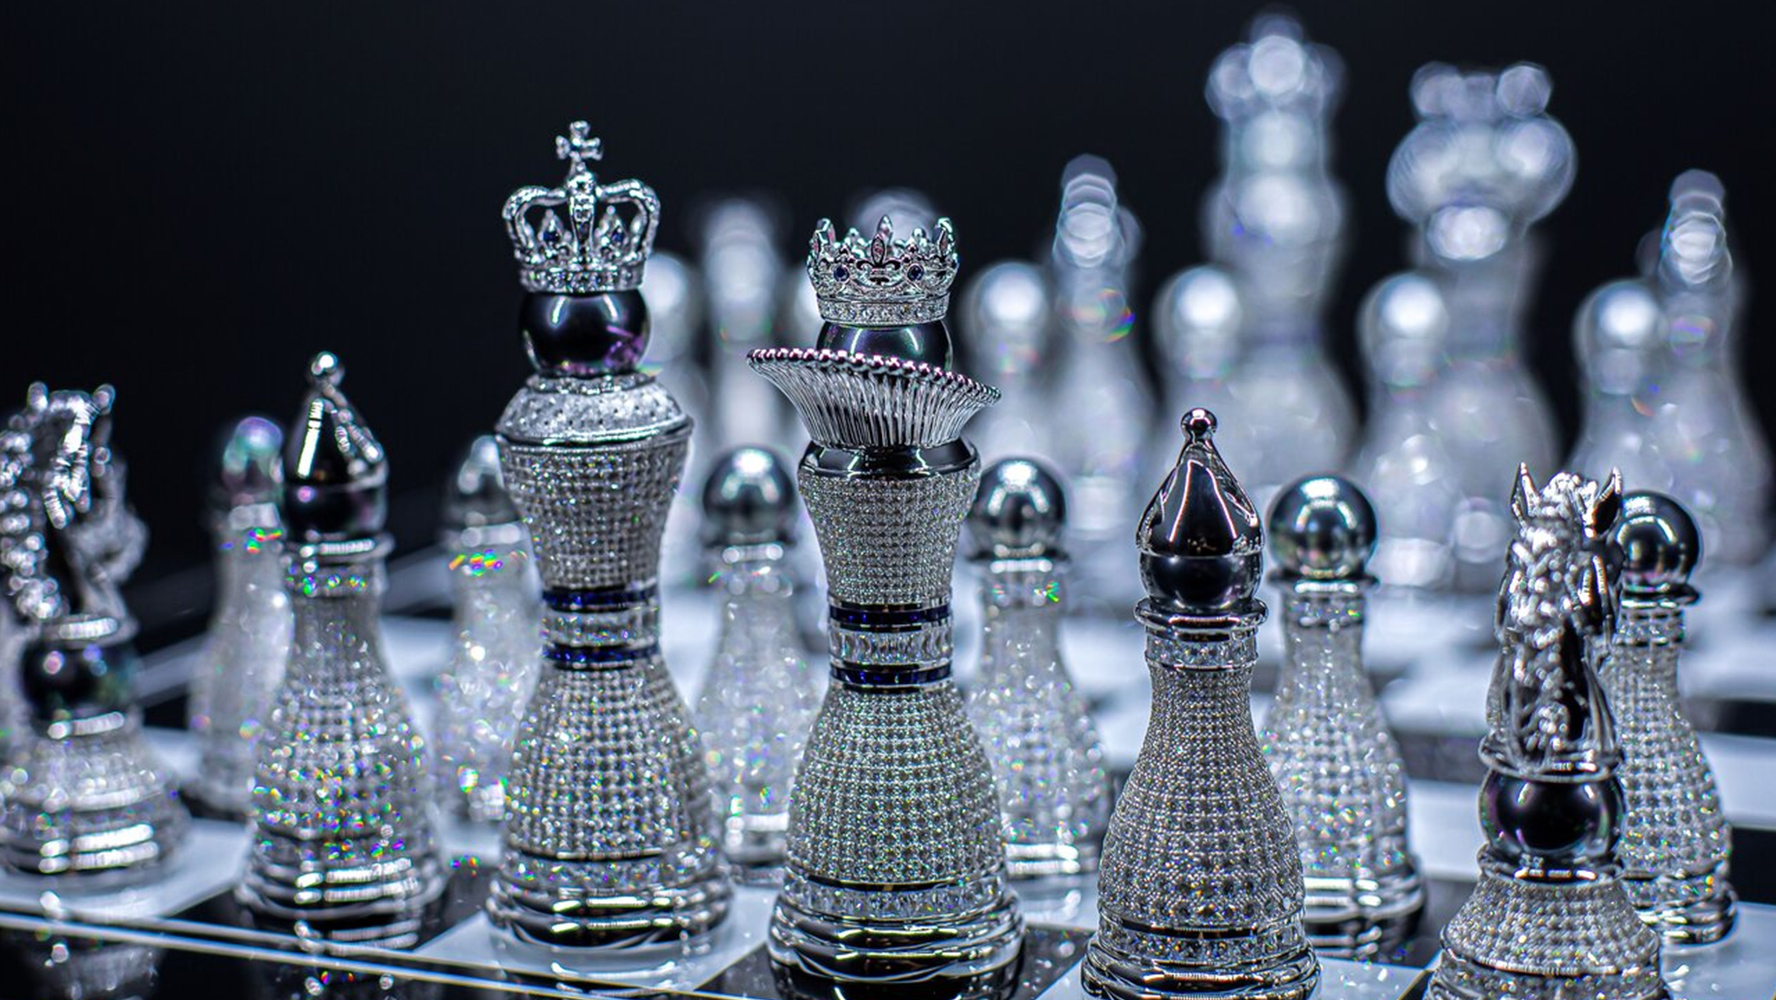 10 juegos de ajedrez realmente caros - Juegos de Oro y Diamante!